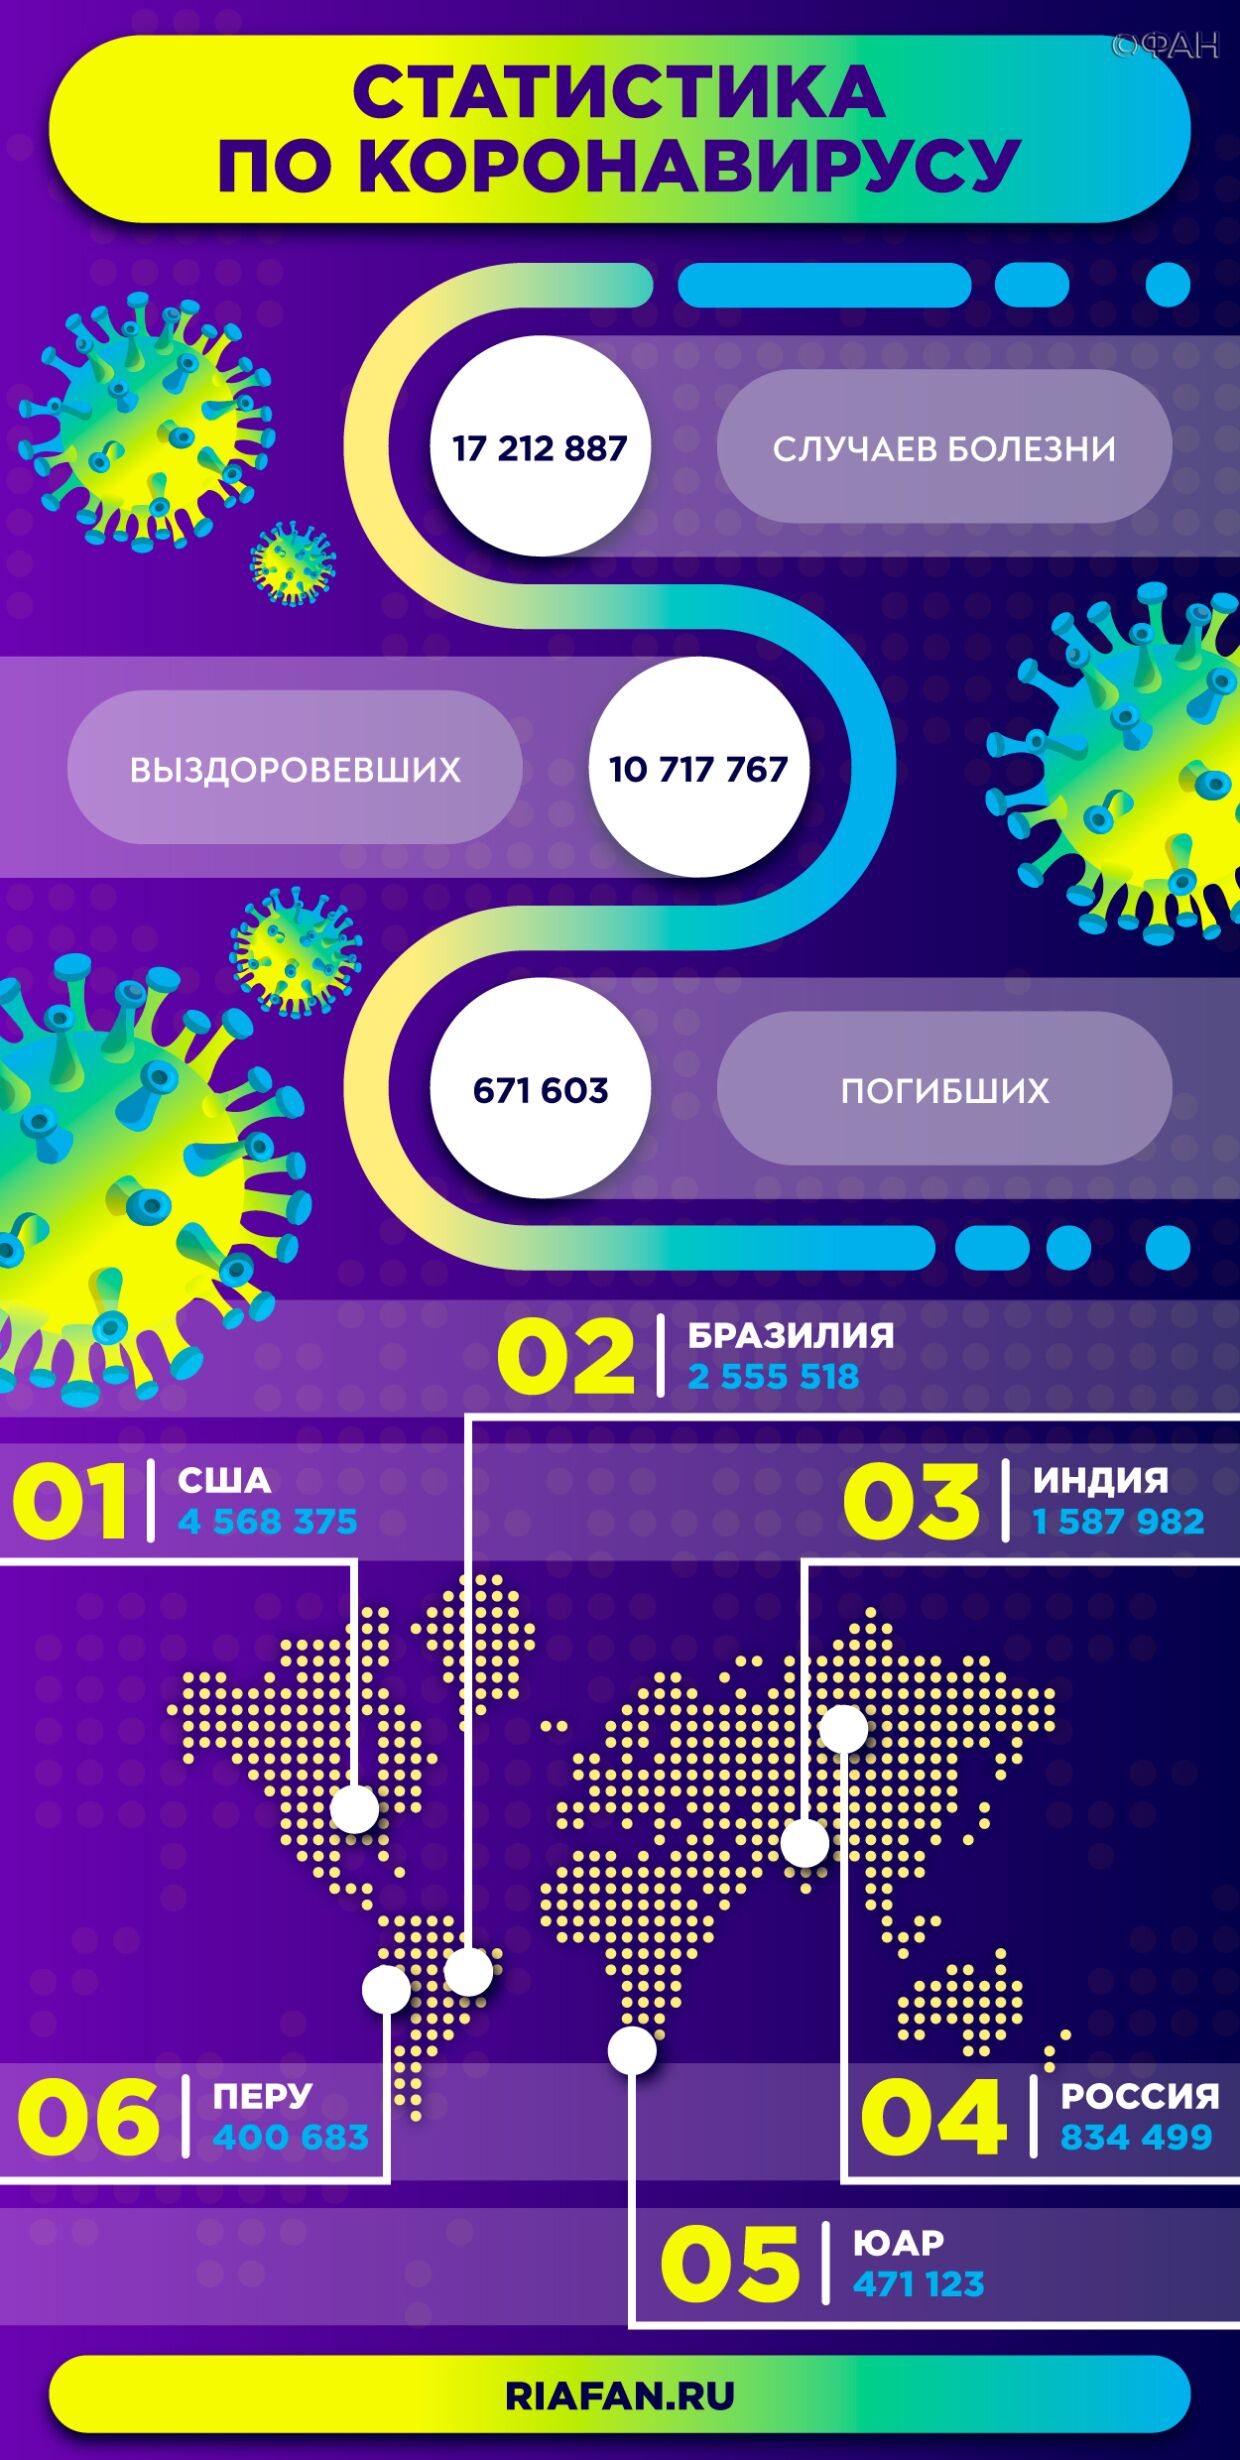 Оперштаб Москвы сообщил о смерти 14 пациентов с коронавирусом